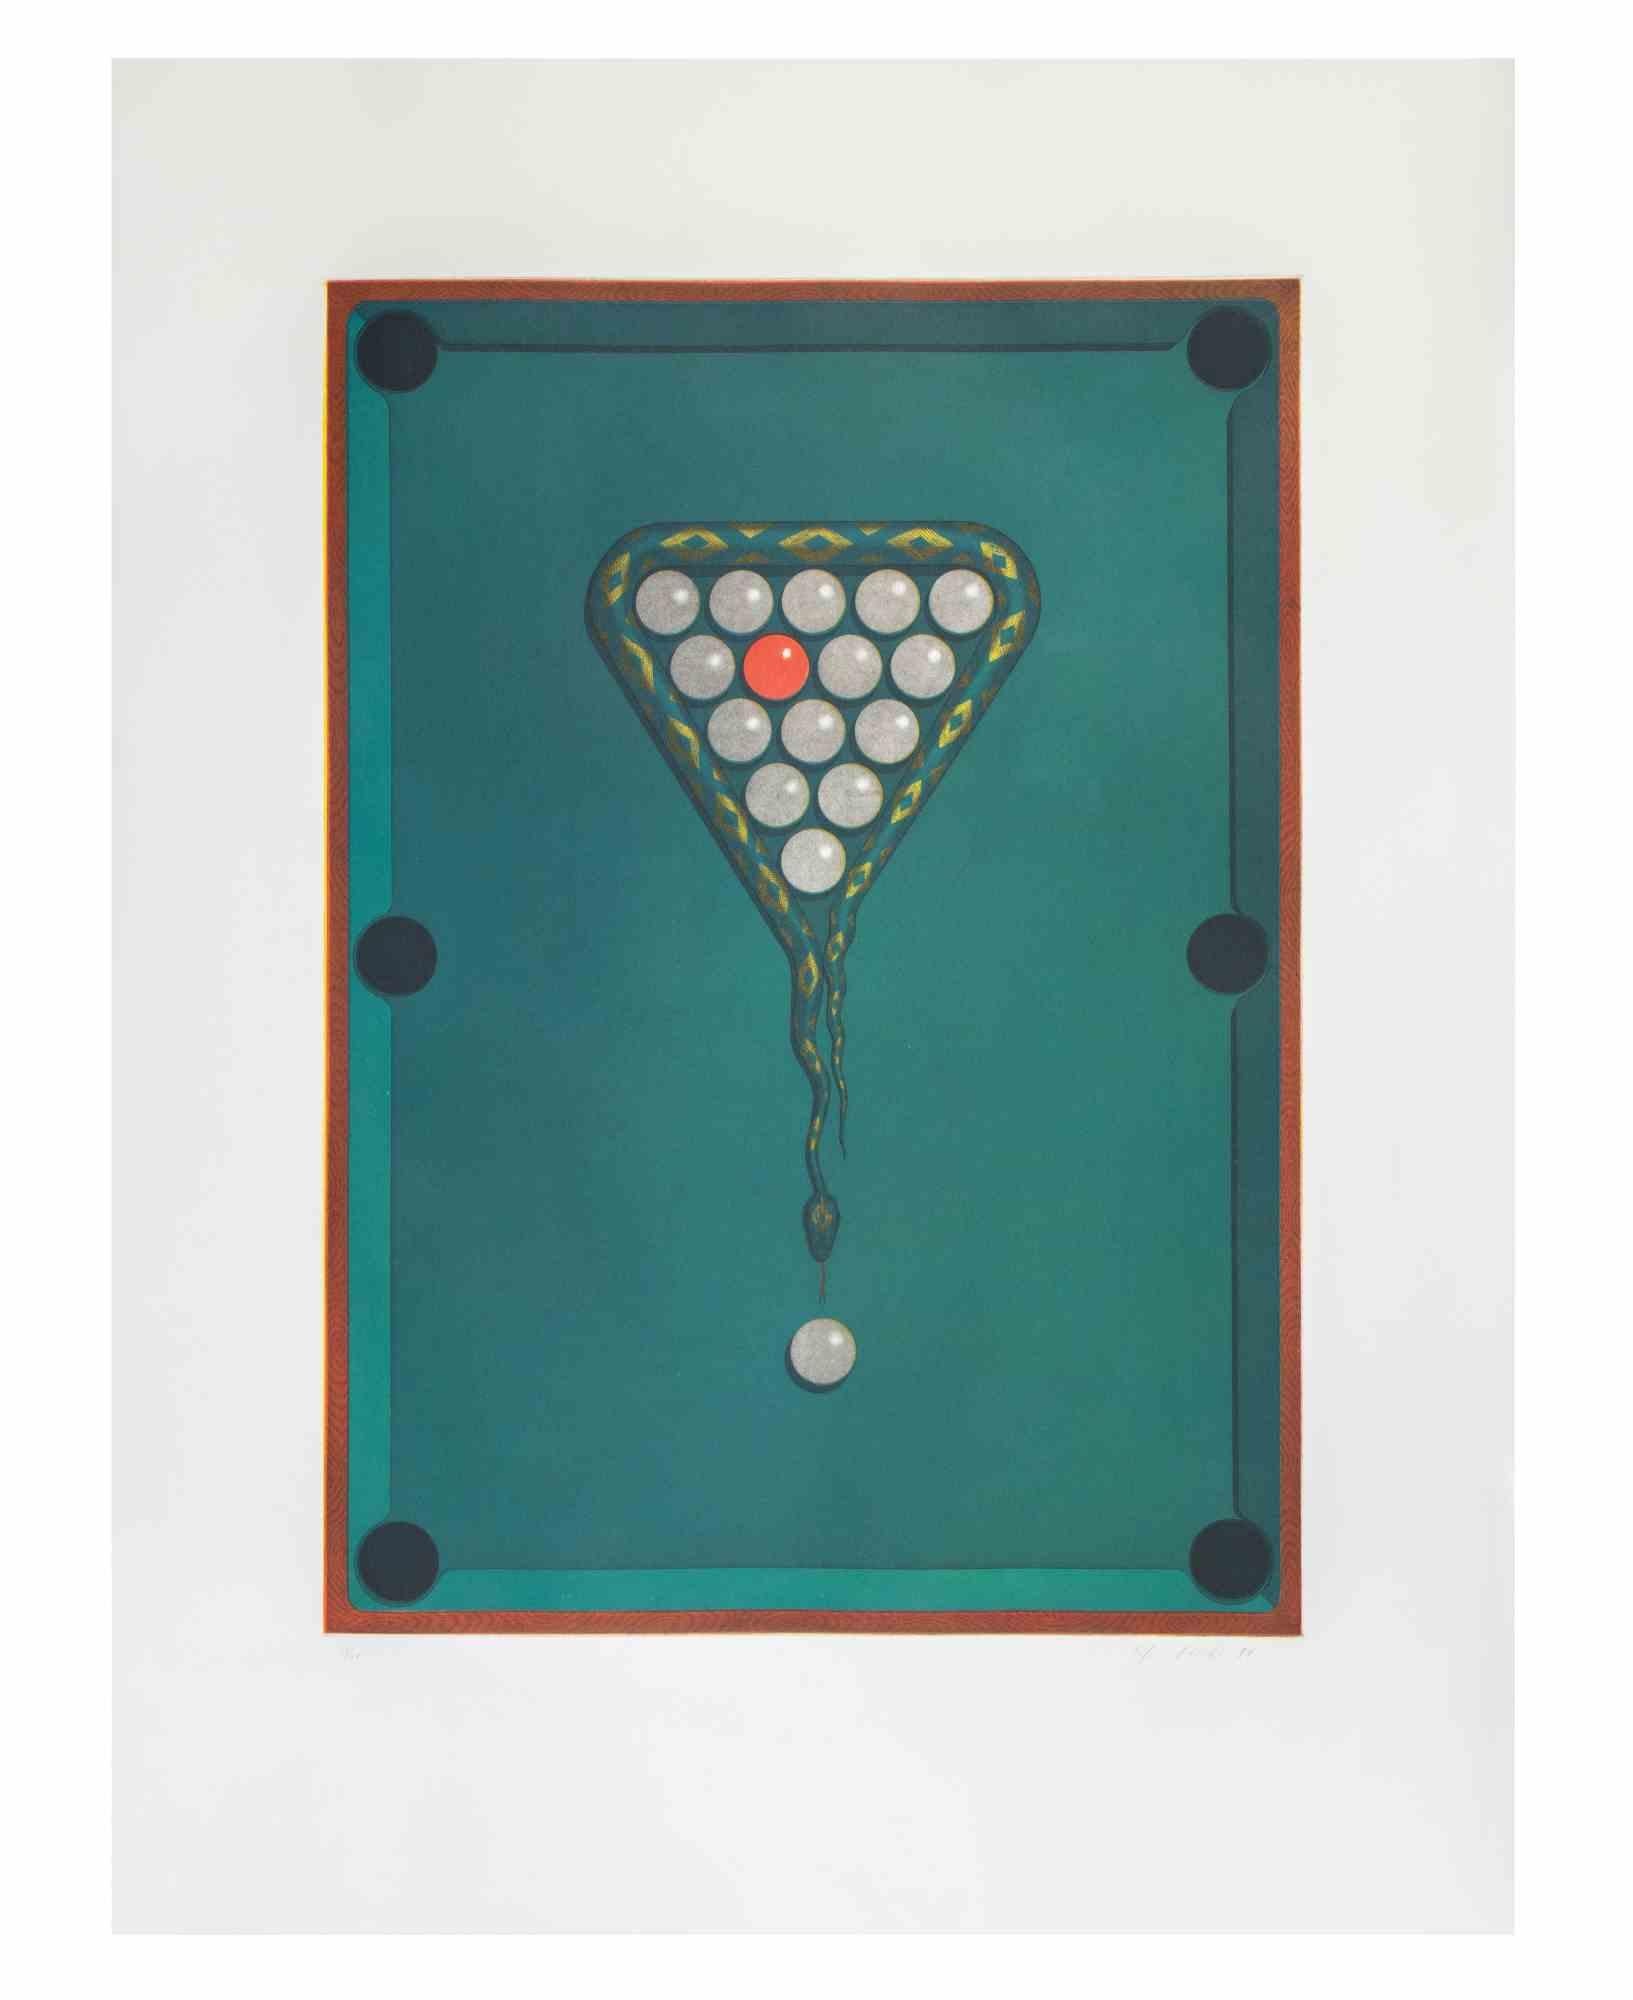 1 auf 16 ist ein zeitgenössisches Kunstwerk des Künstlers Fifo Stricker aus dem Jahr 1984.

Gemischte farbige Aquatinta und Radierung. 

Vom Künstler am rechten unteren Rand handsigniert und datiert.

Am linken unteren Rand nummeriert. Auflage von